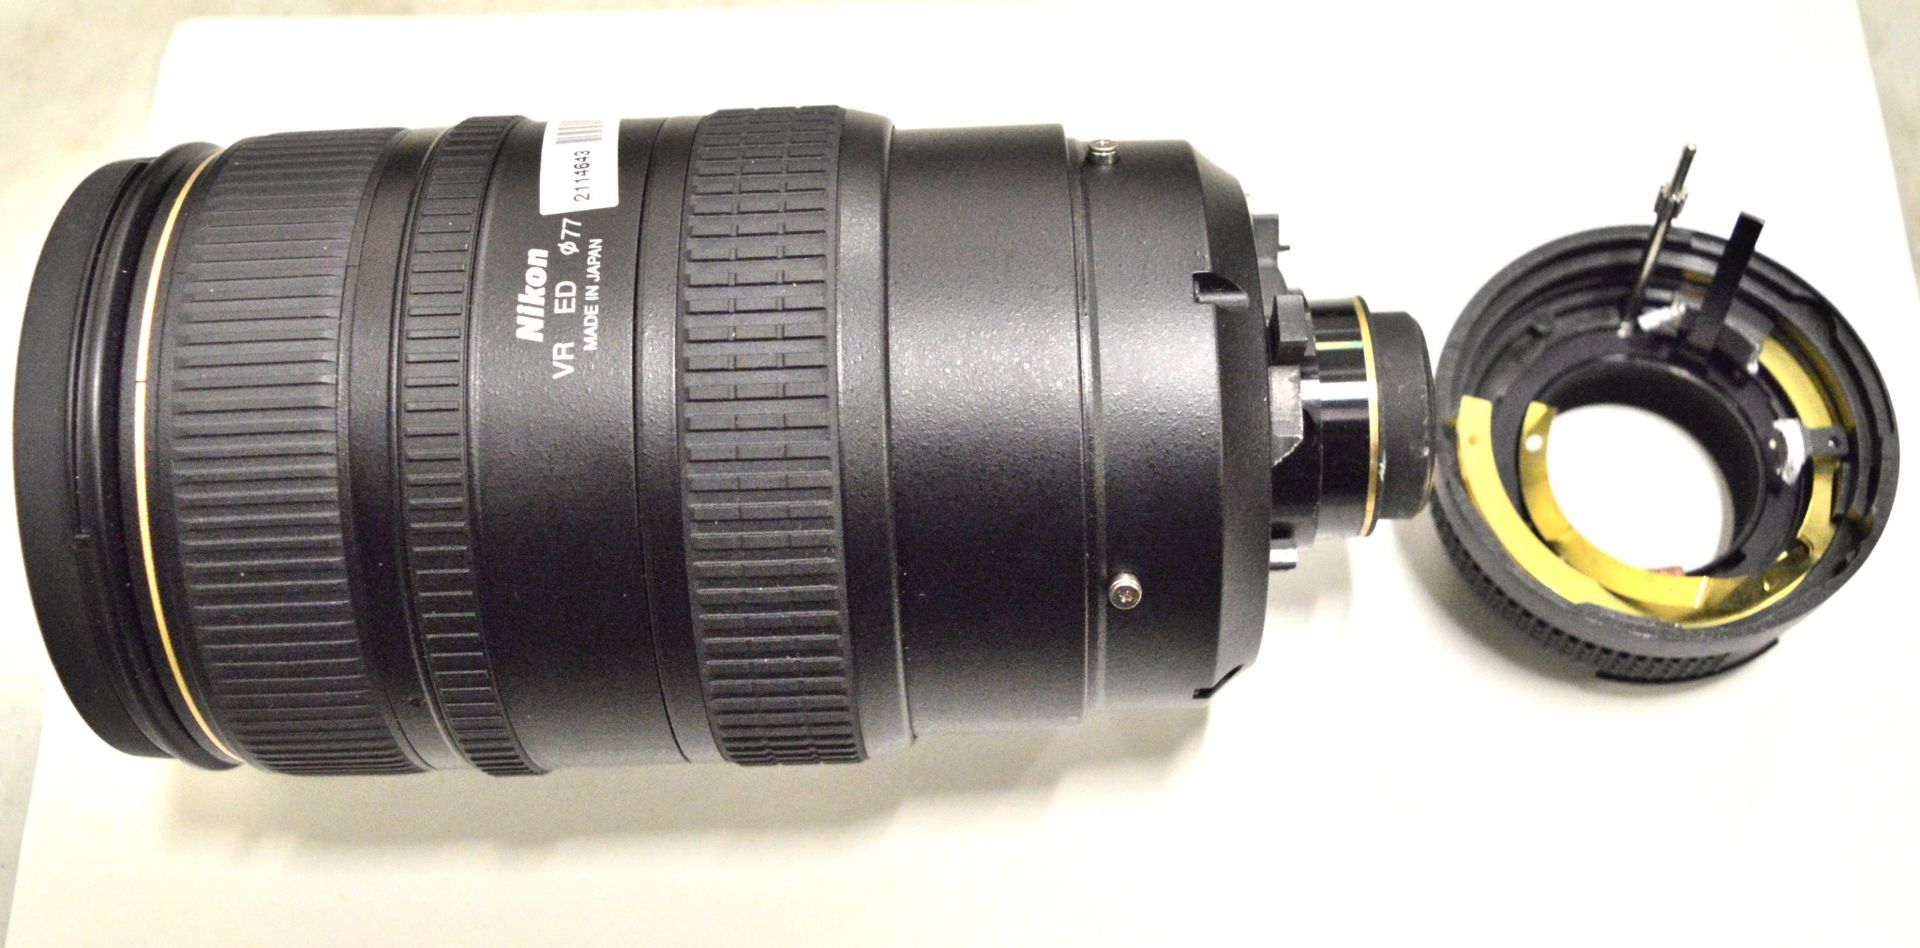 Nikon Lens AF-Nikkor 80-400mm 1:4.5-5.6D - Serial No. 412575. - Image 3 of 6